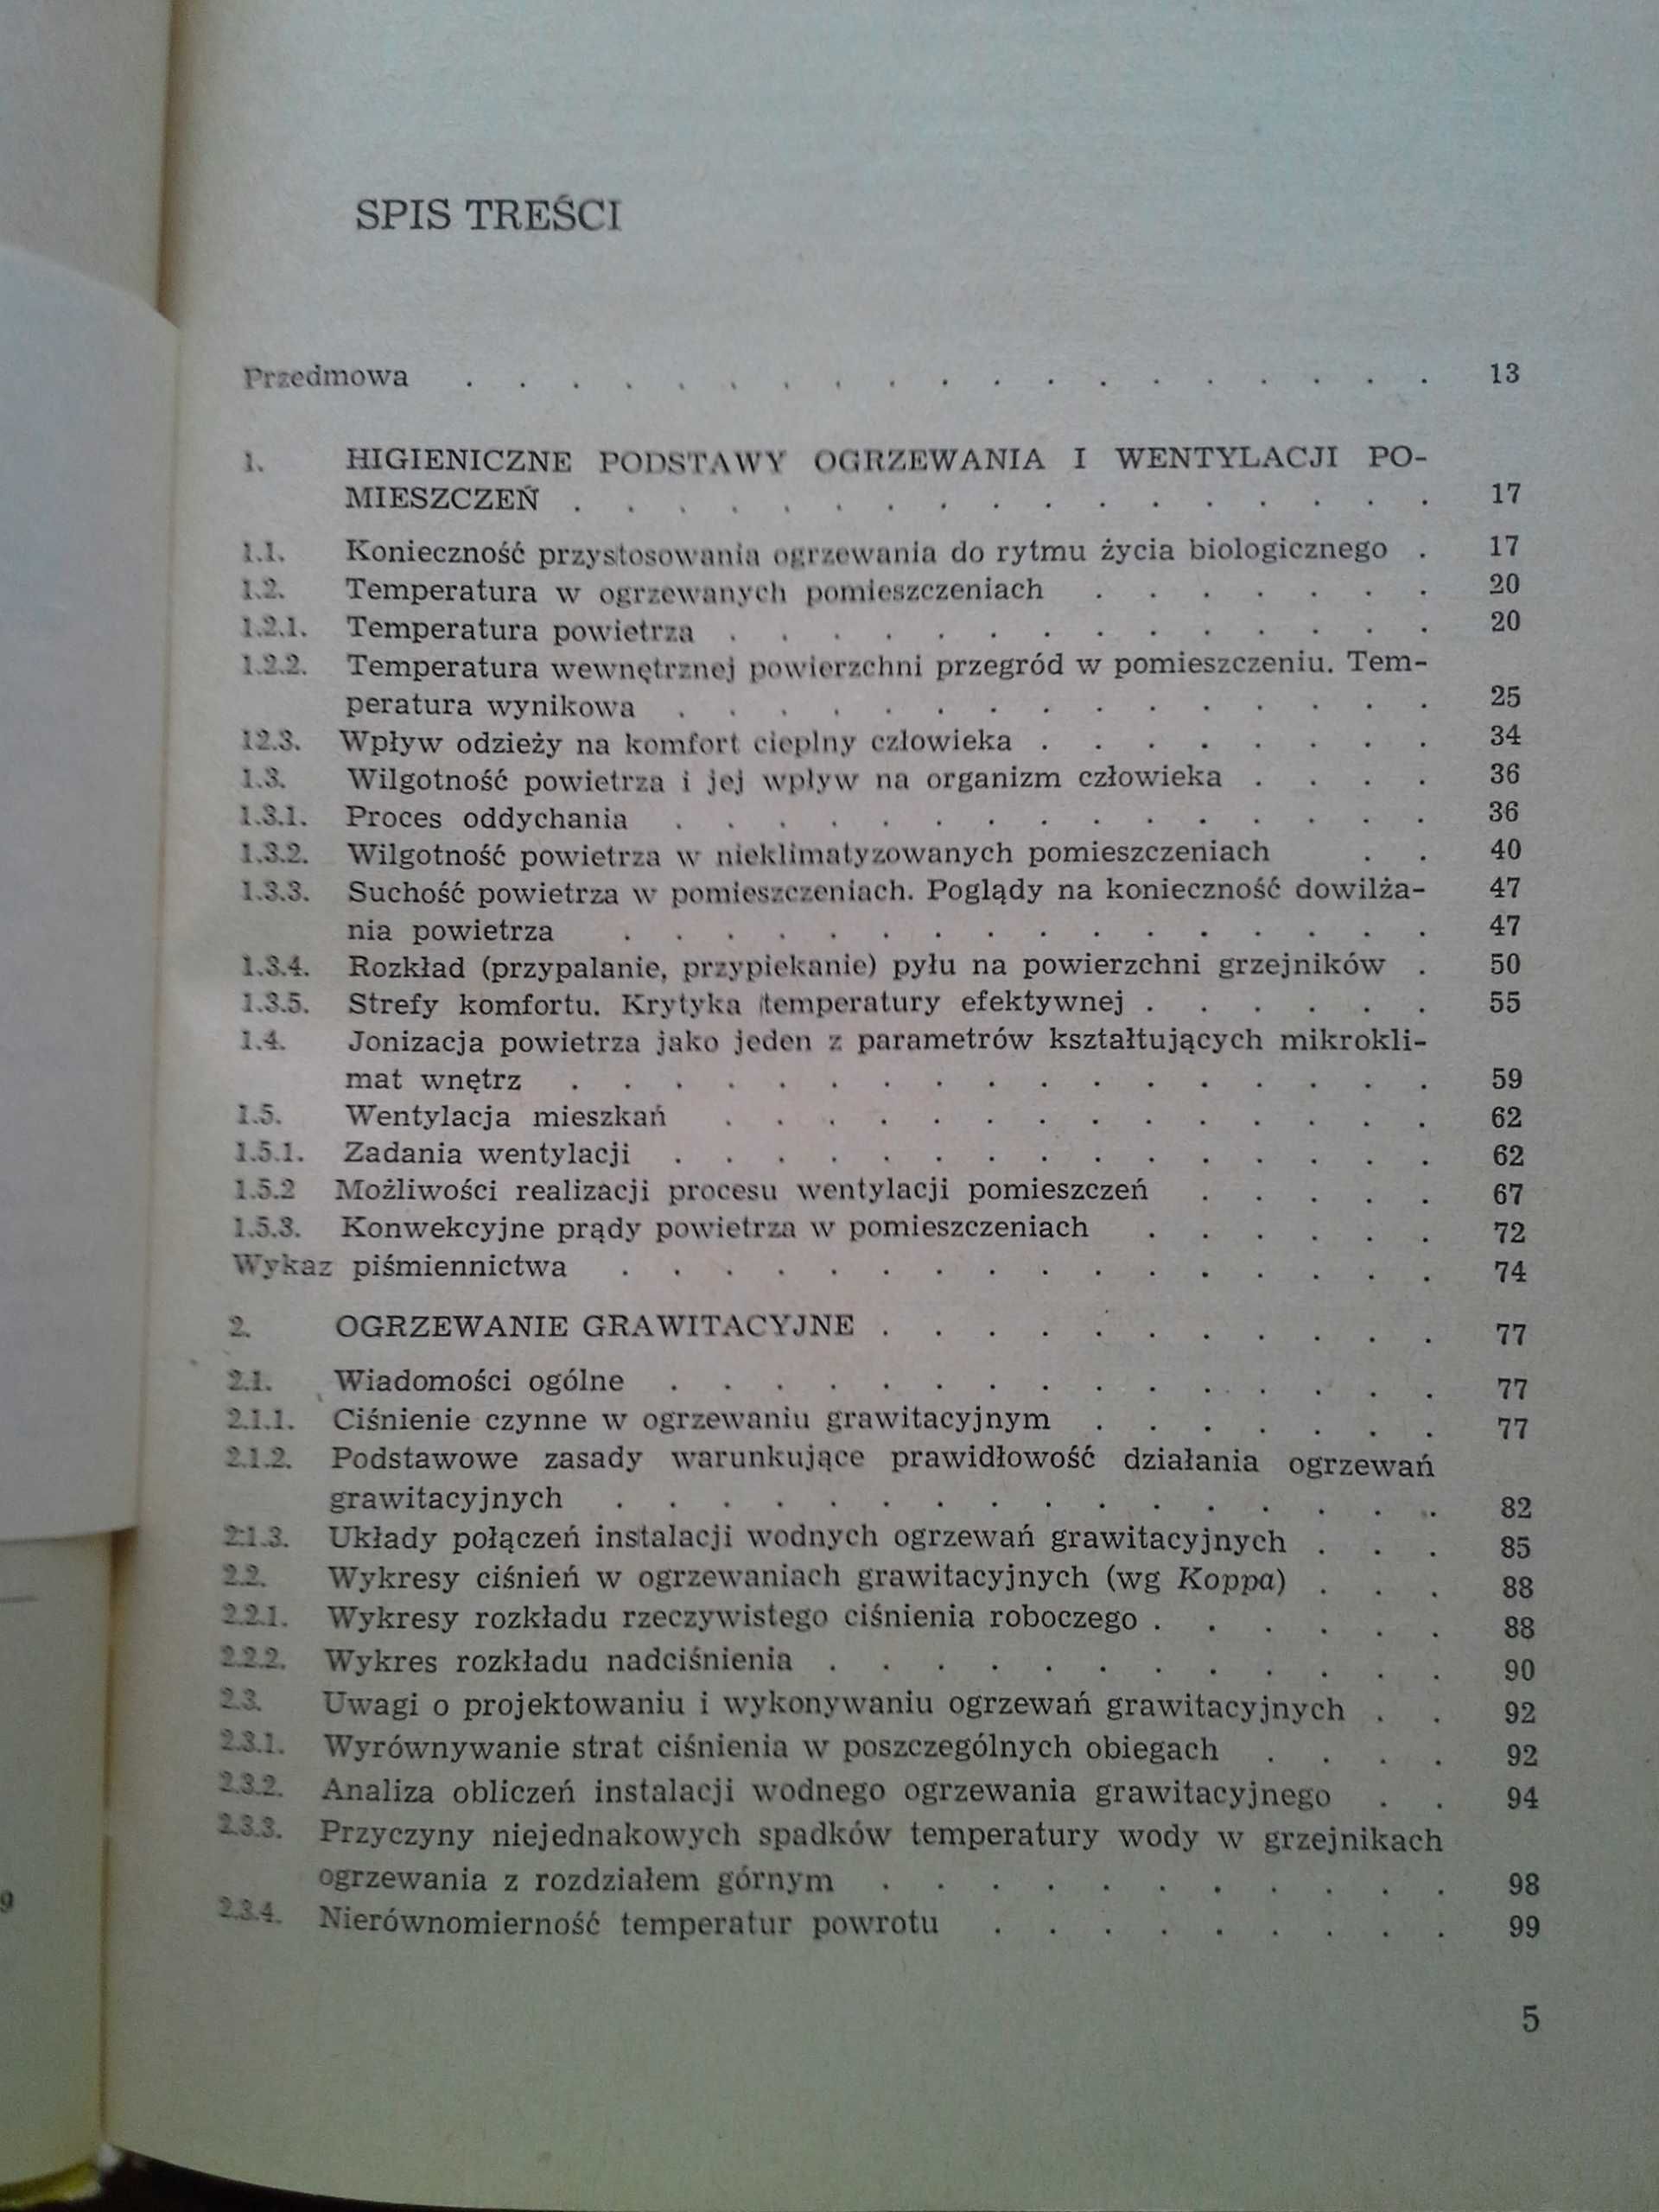 Centralne Ogrzewanie Regulacja i Eksploatacja, J.S. Mielnicki, wyd. I.